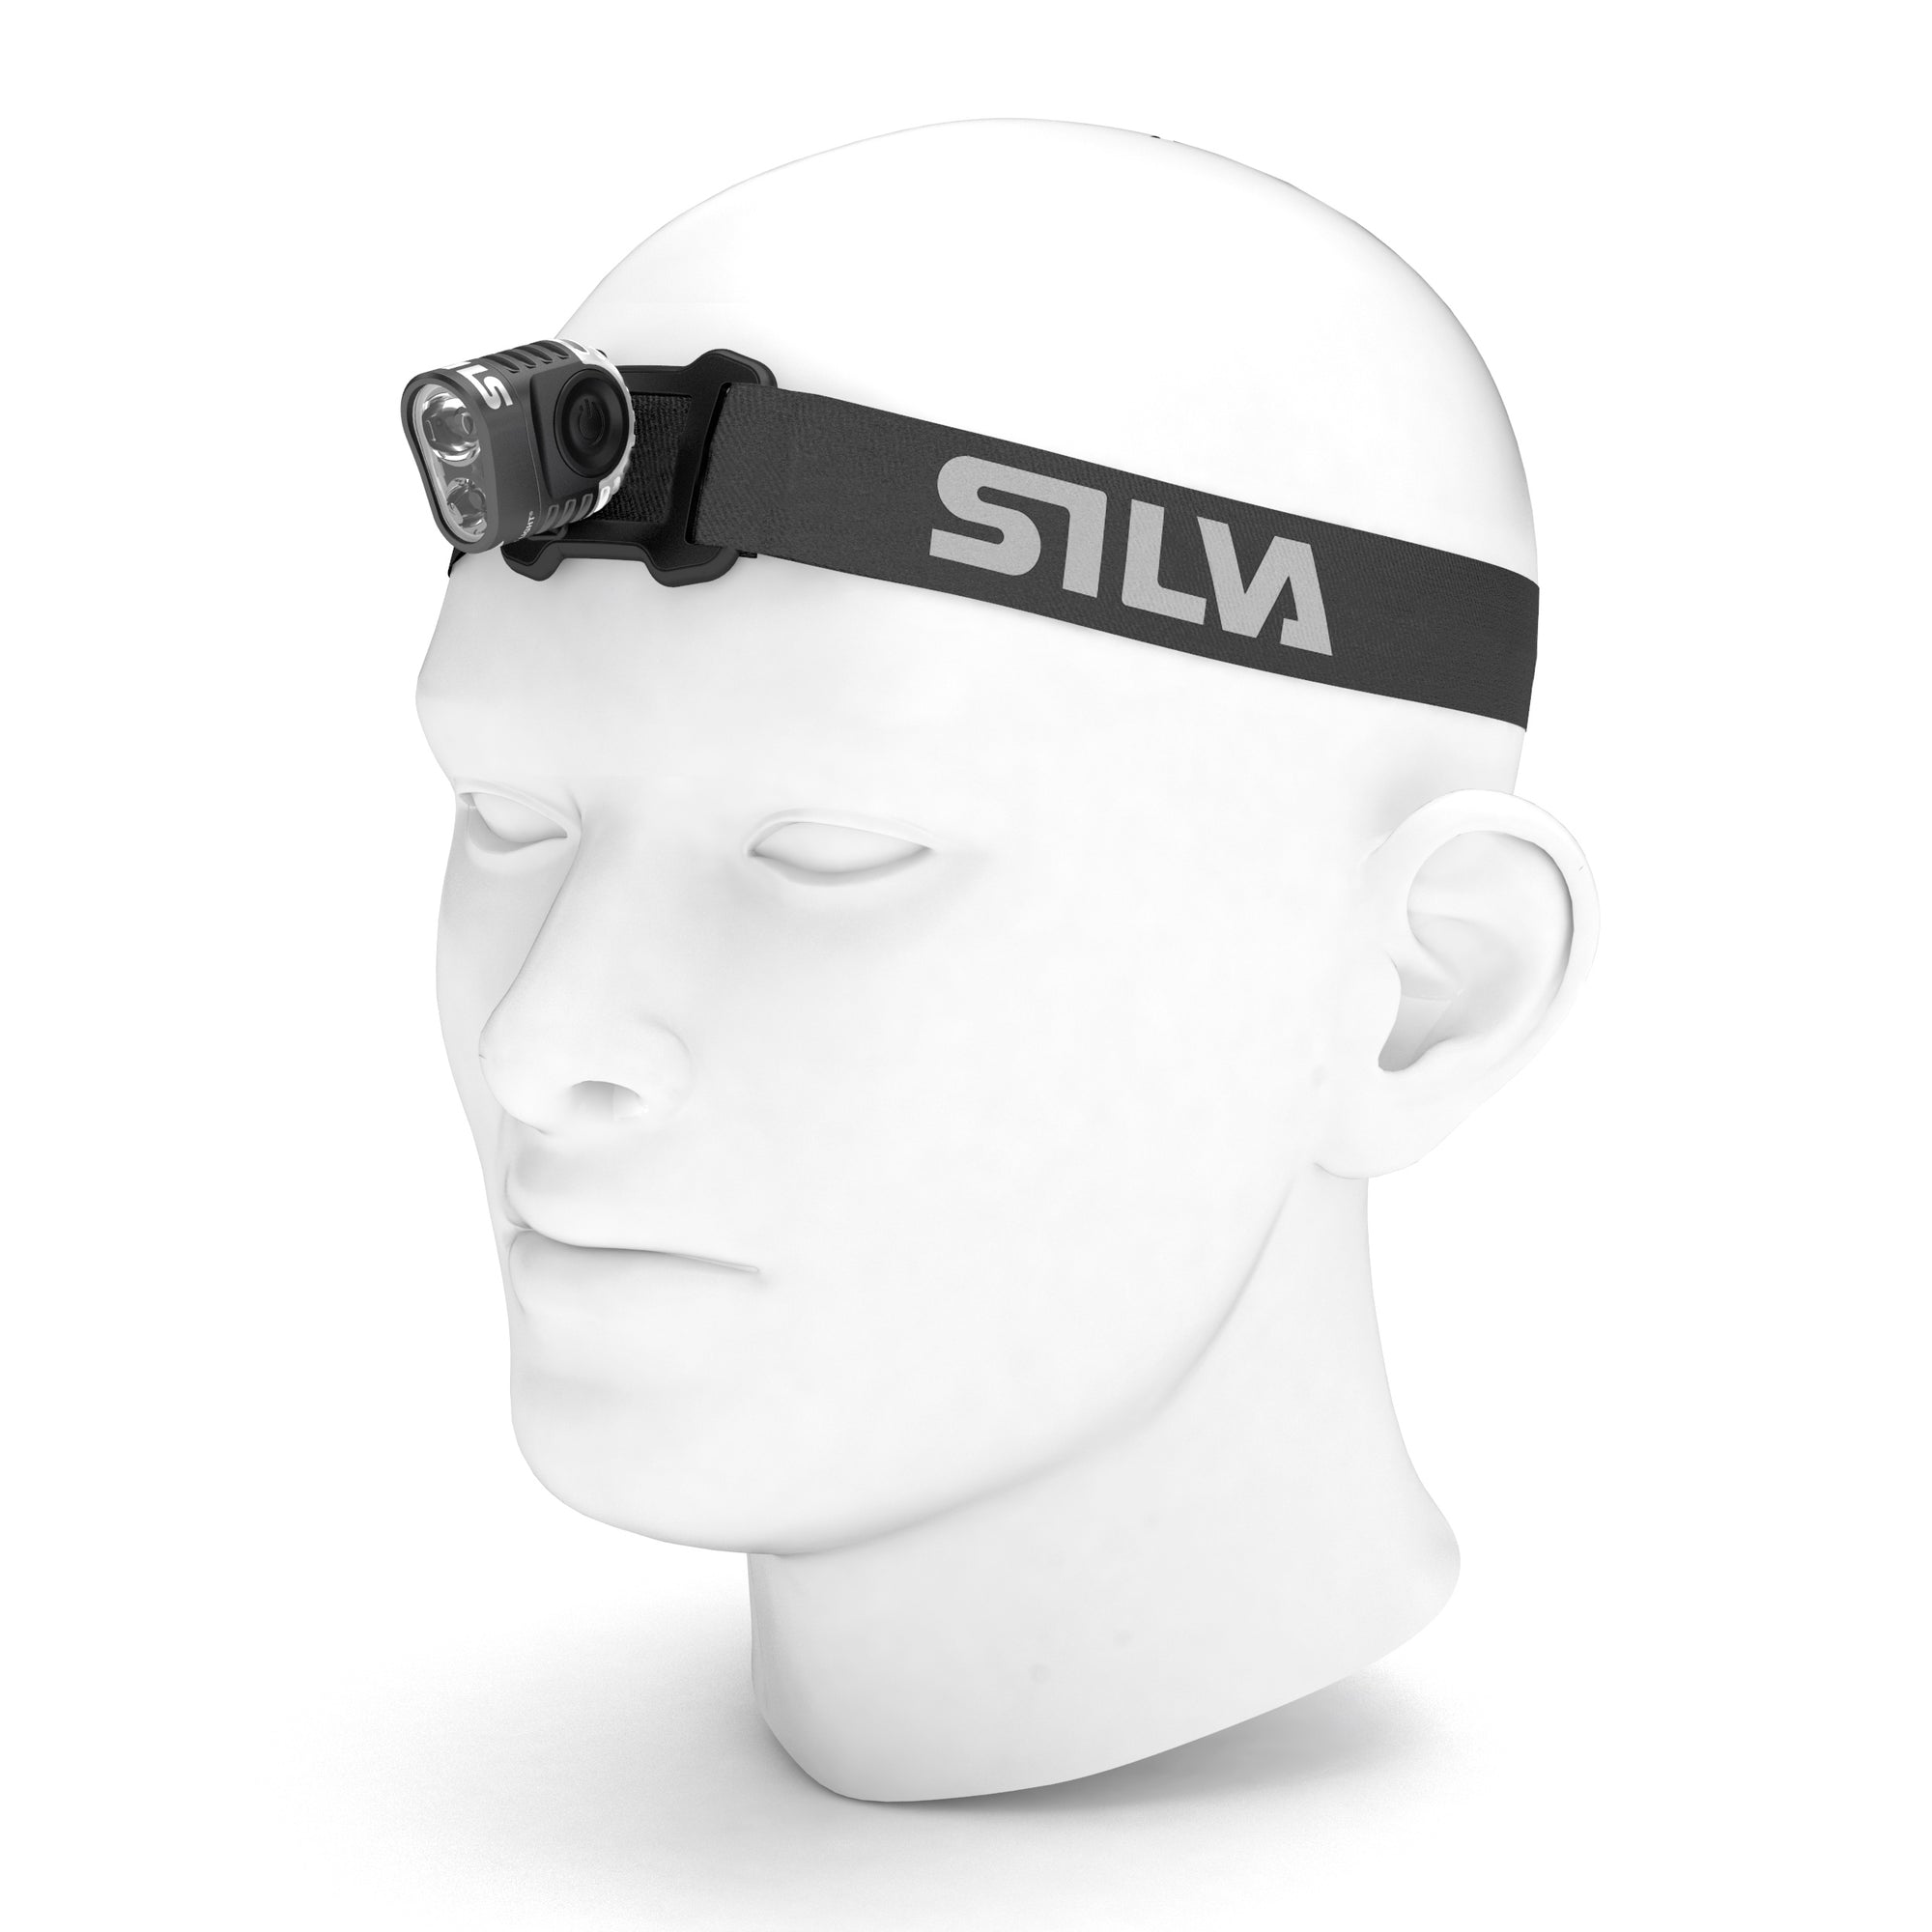 SilvaSilva Trail Speed 4XT HeadlampOutdoor Action